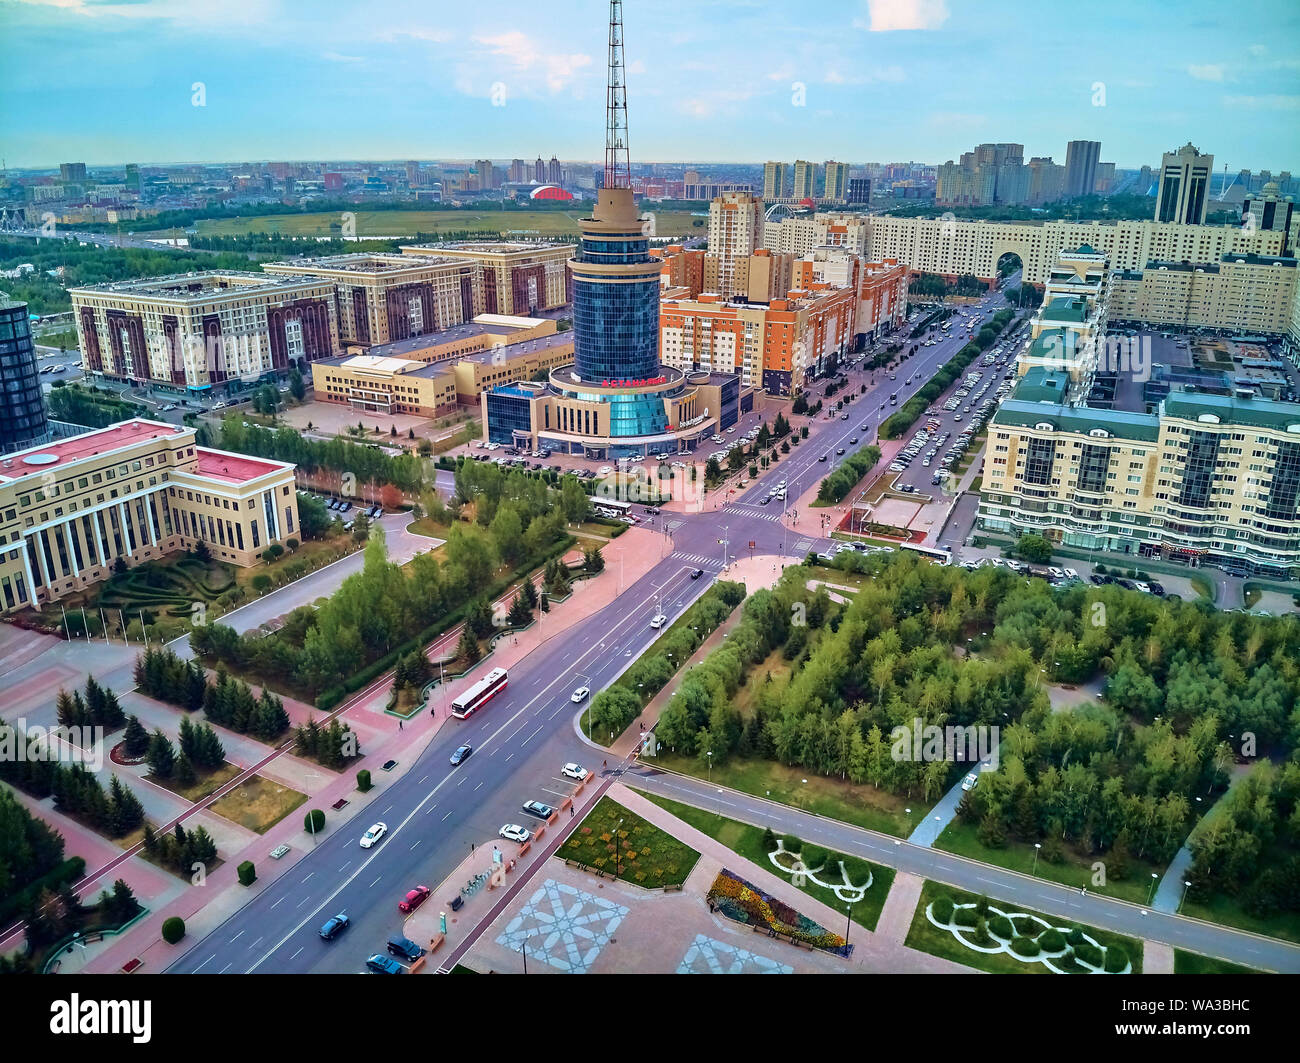 NUR-Sultan, le Kazakhstan (QAZAQSTAN) - le 29 juillet 2019 : Très belle vue panoramique vue de drone aérien Nursultan (Astana) centre ville avec des gratte-ciel et Baite Banque D'Images